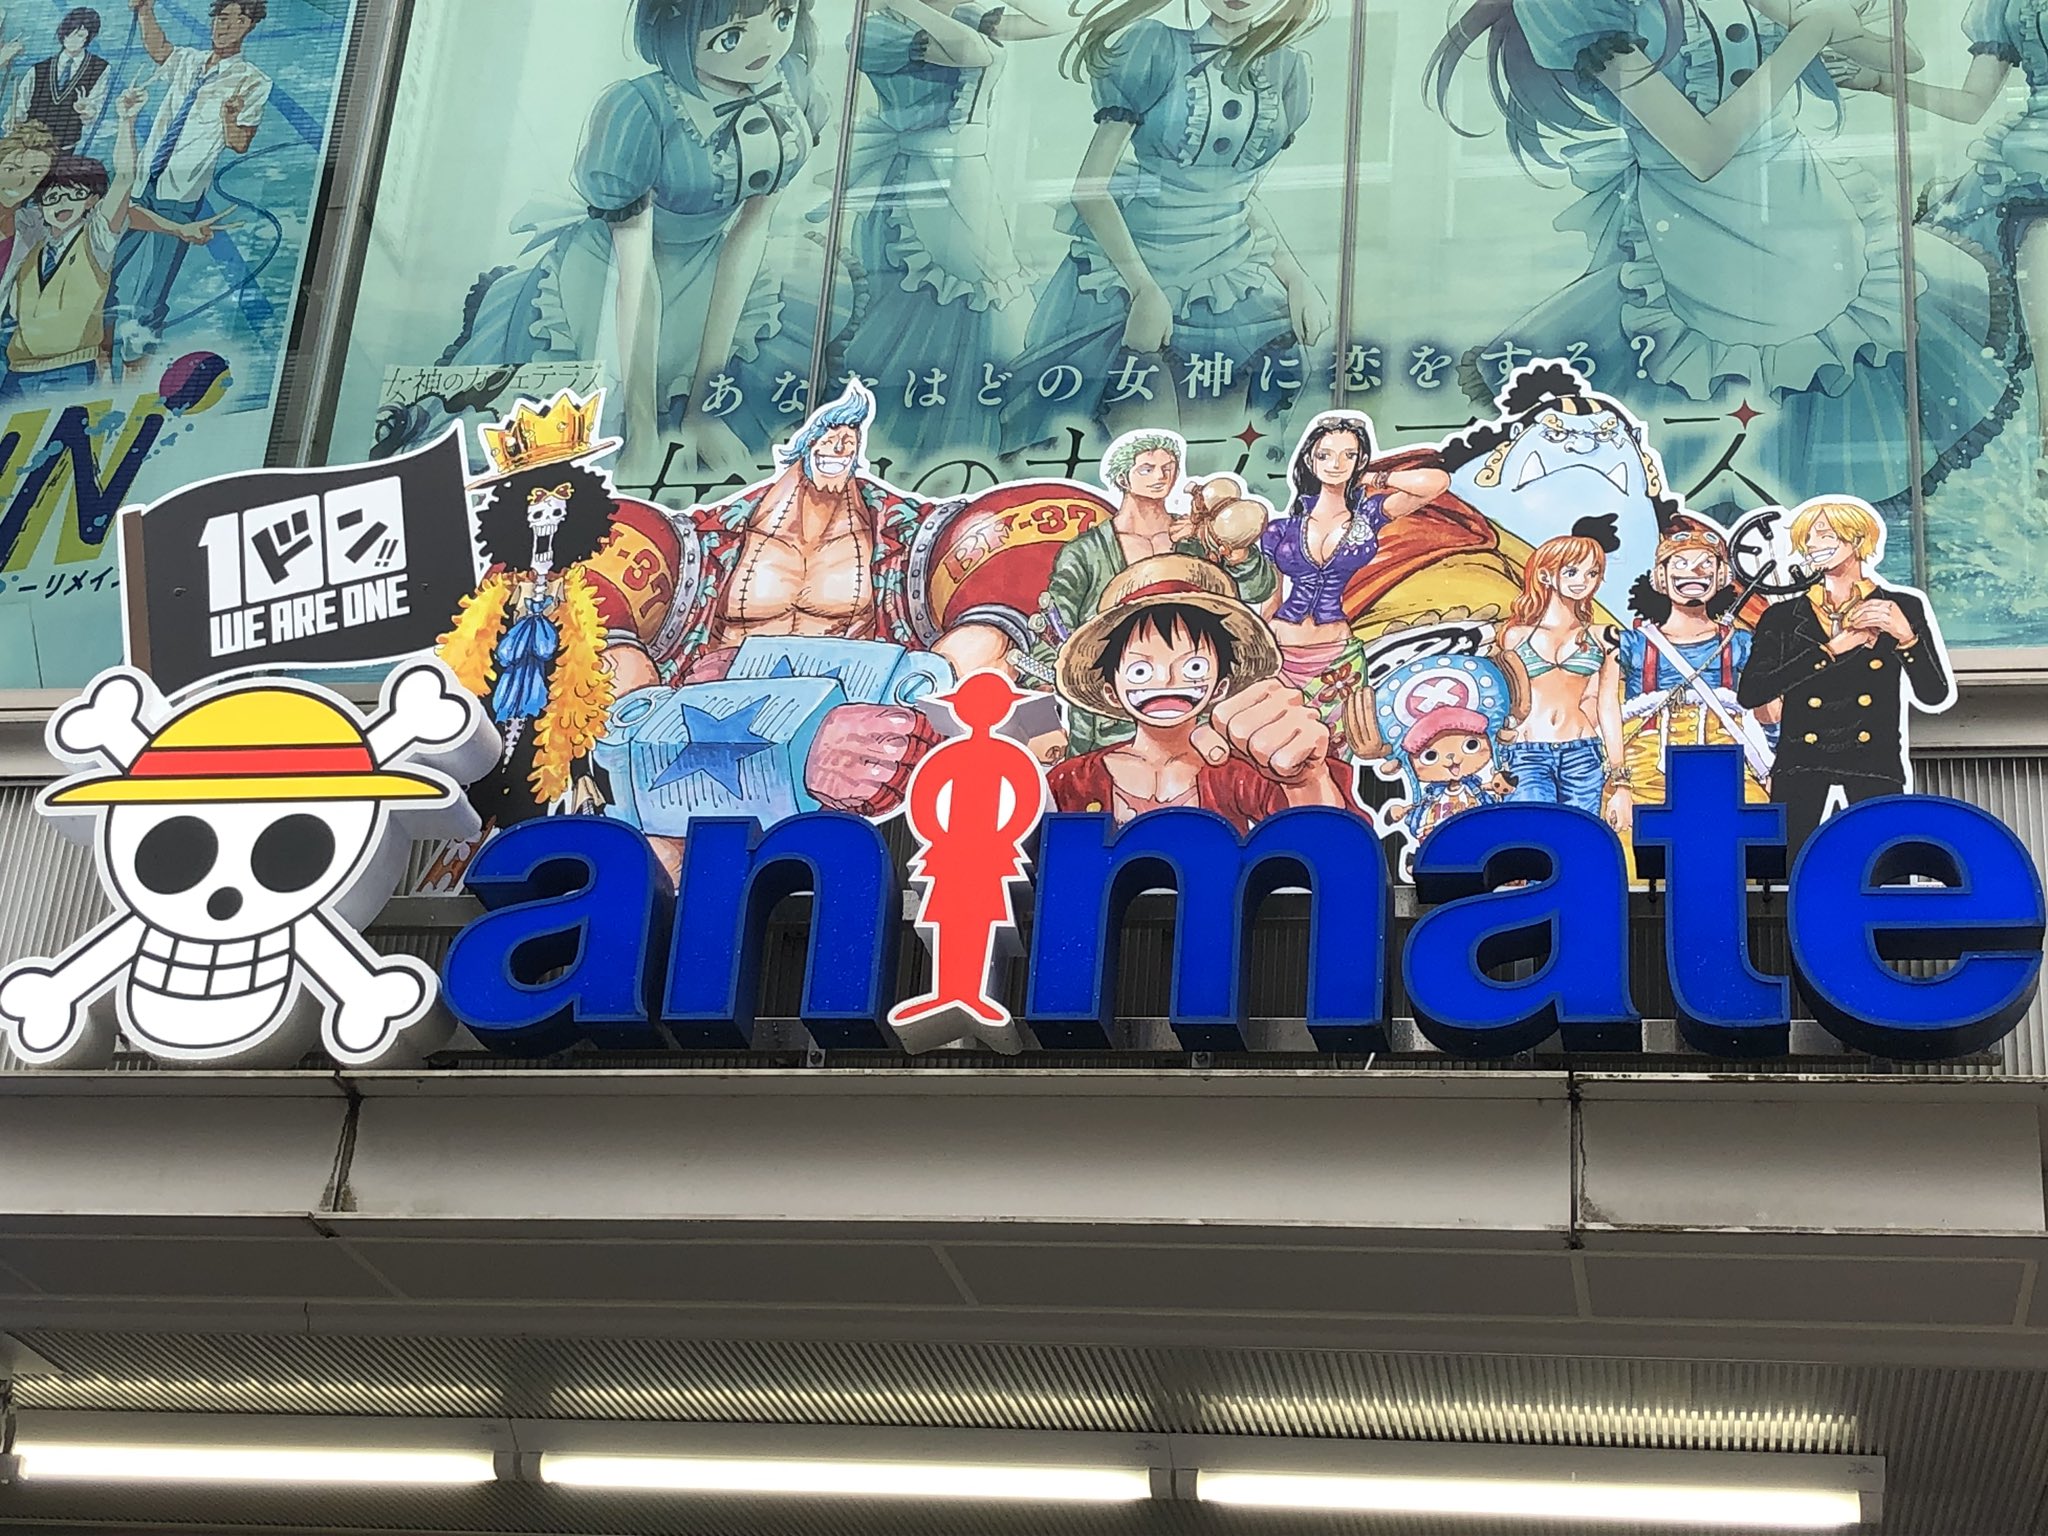 アニメイト池袋本店 祝 100巻 本日は One Piece 100巻の発売日 な なんと当店のロゴもone Piece仕様になってるアニ めっちゃカッコいいアニ Onepiece100 Weareone T Co Lrcx01igr3 Twitter